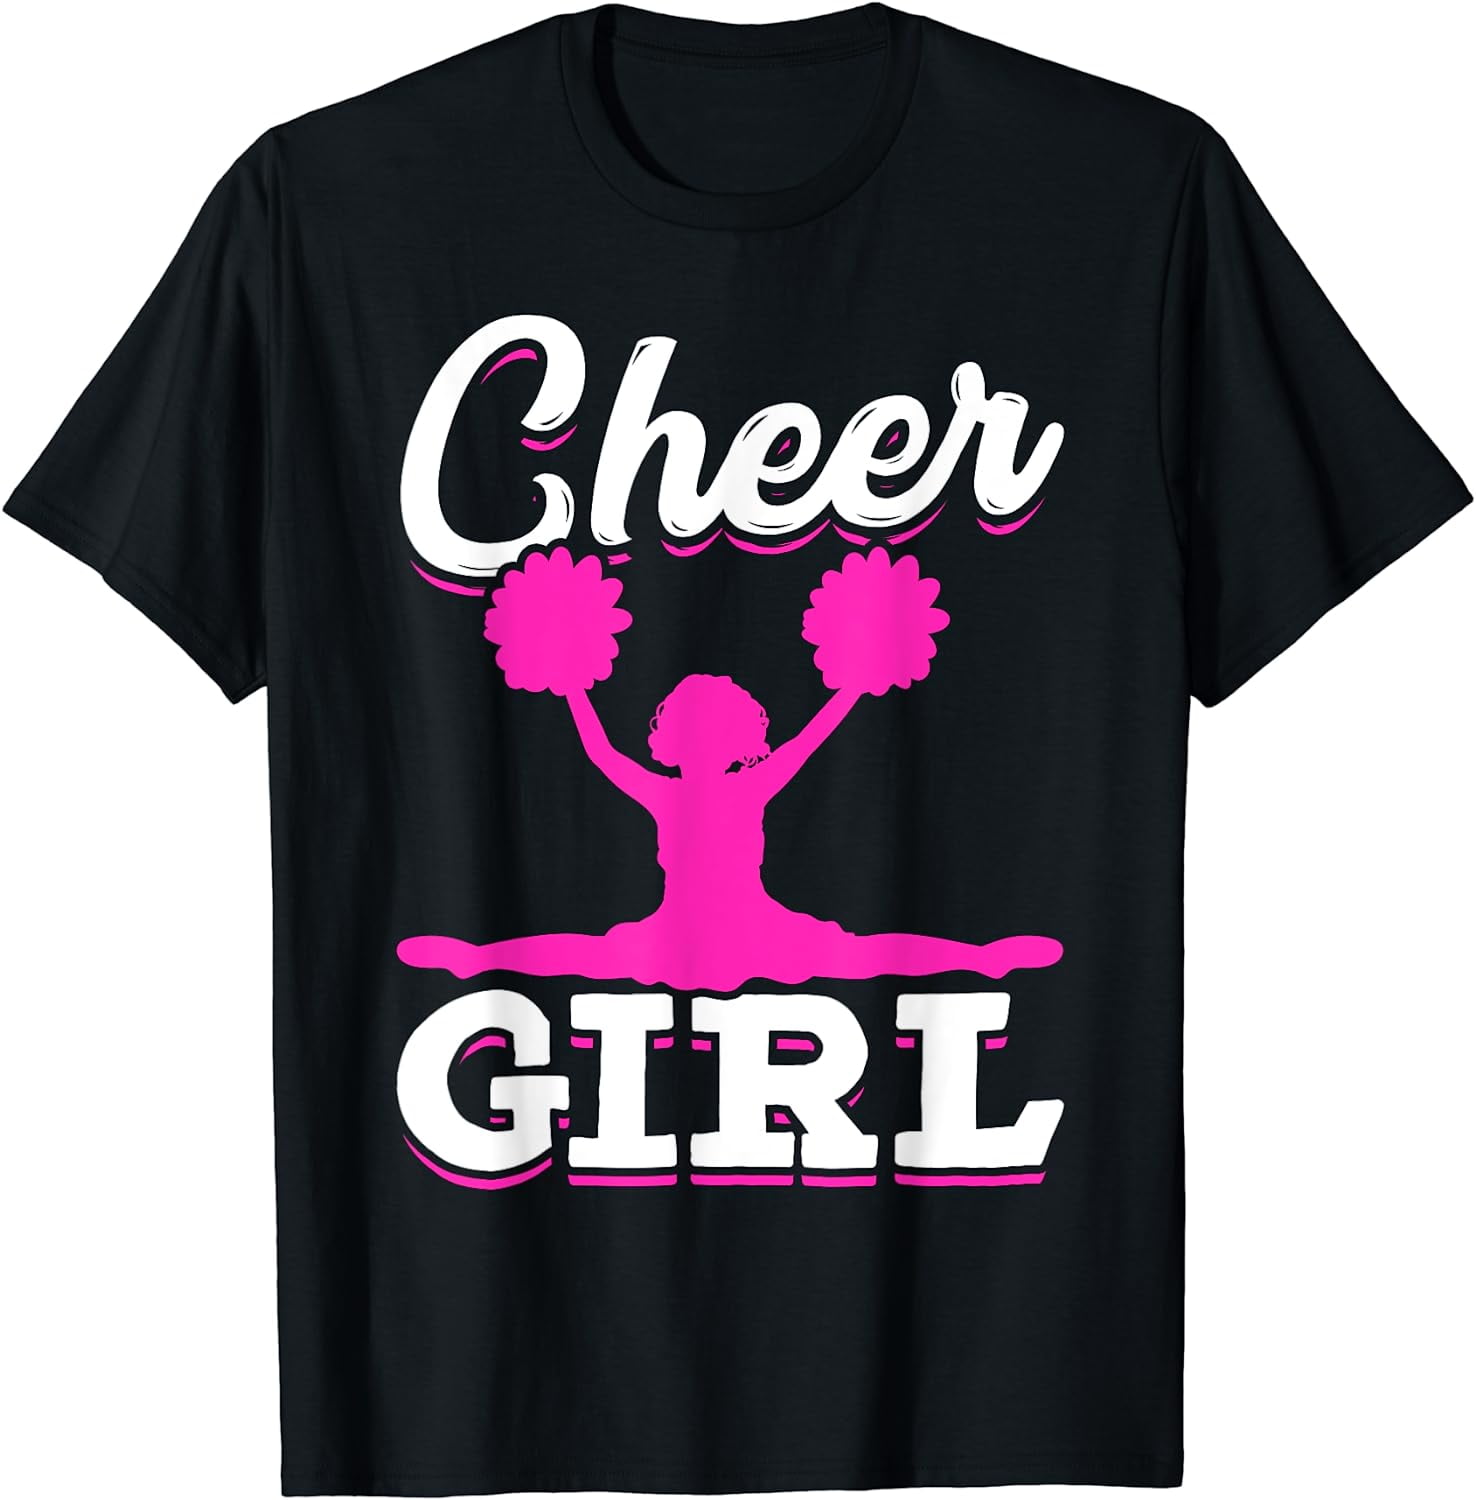 Cheering Women Girls Cheer Team Cheerleader Cheerleading T-Shirt ...